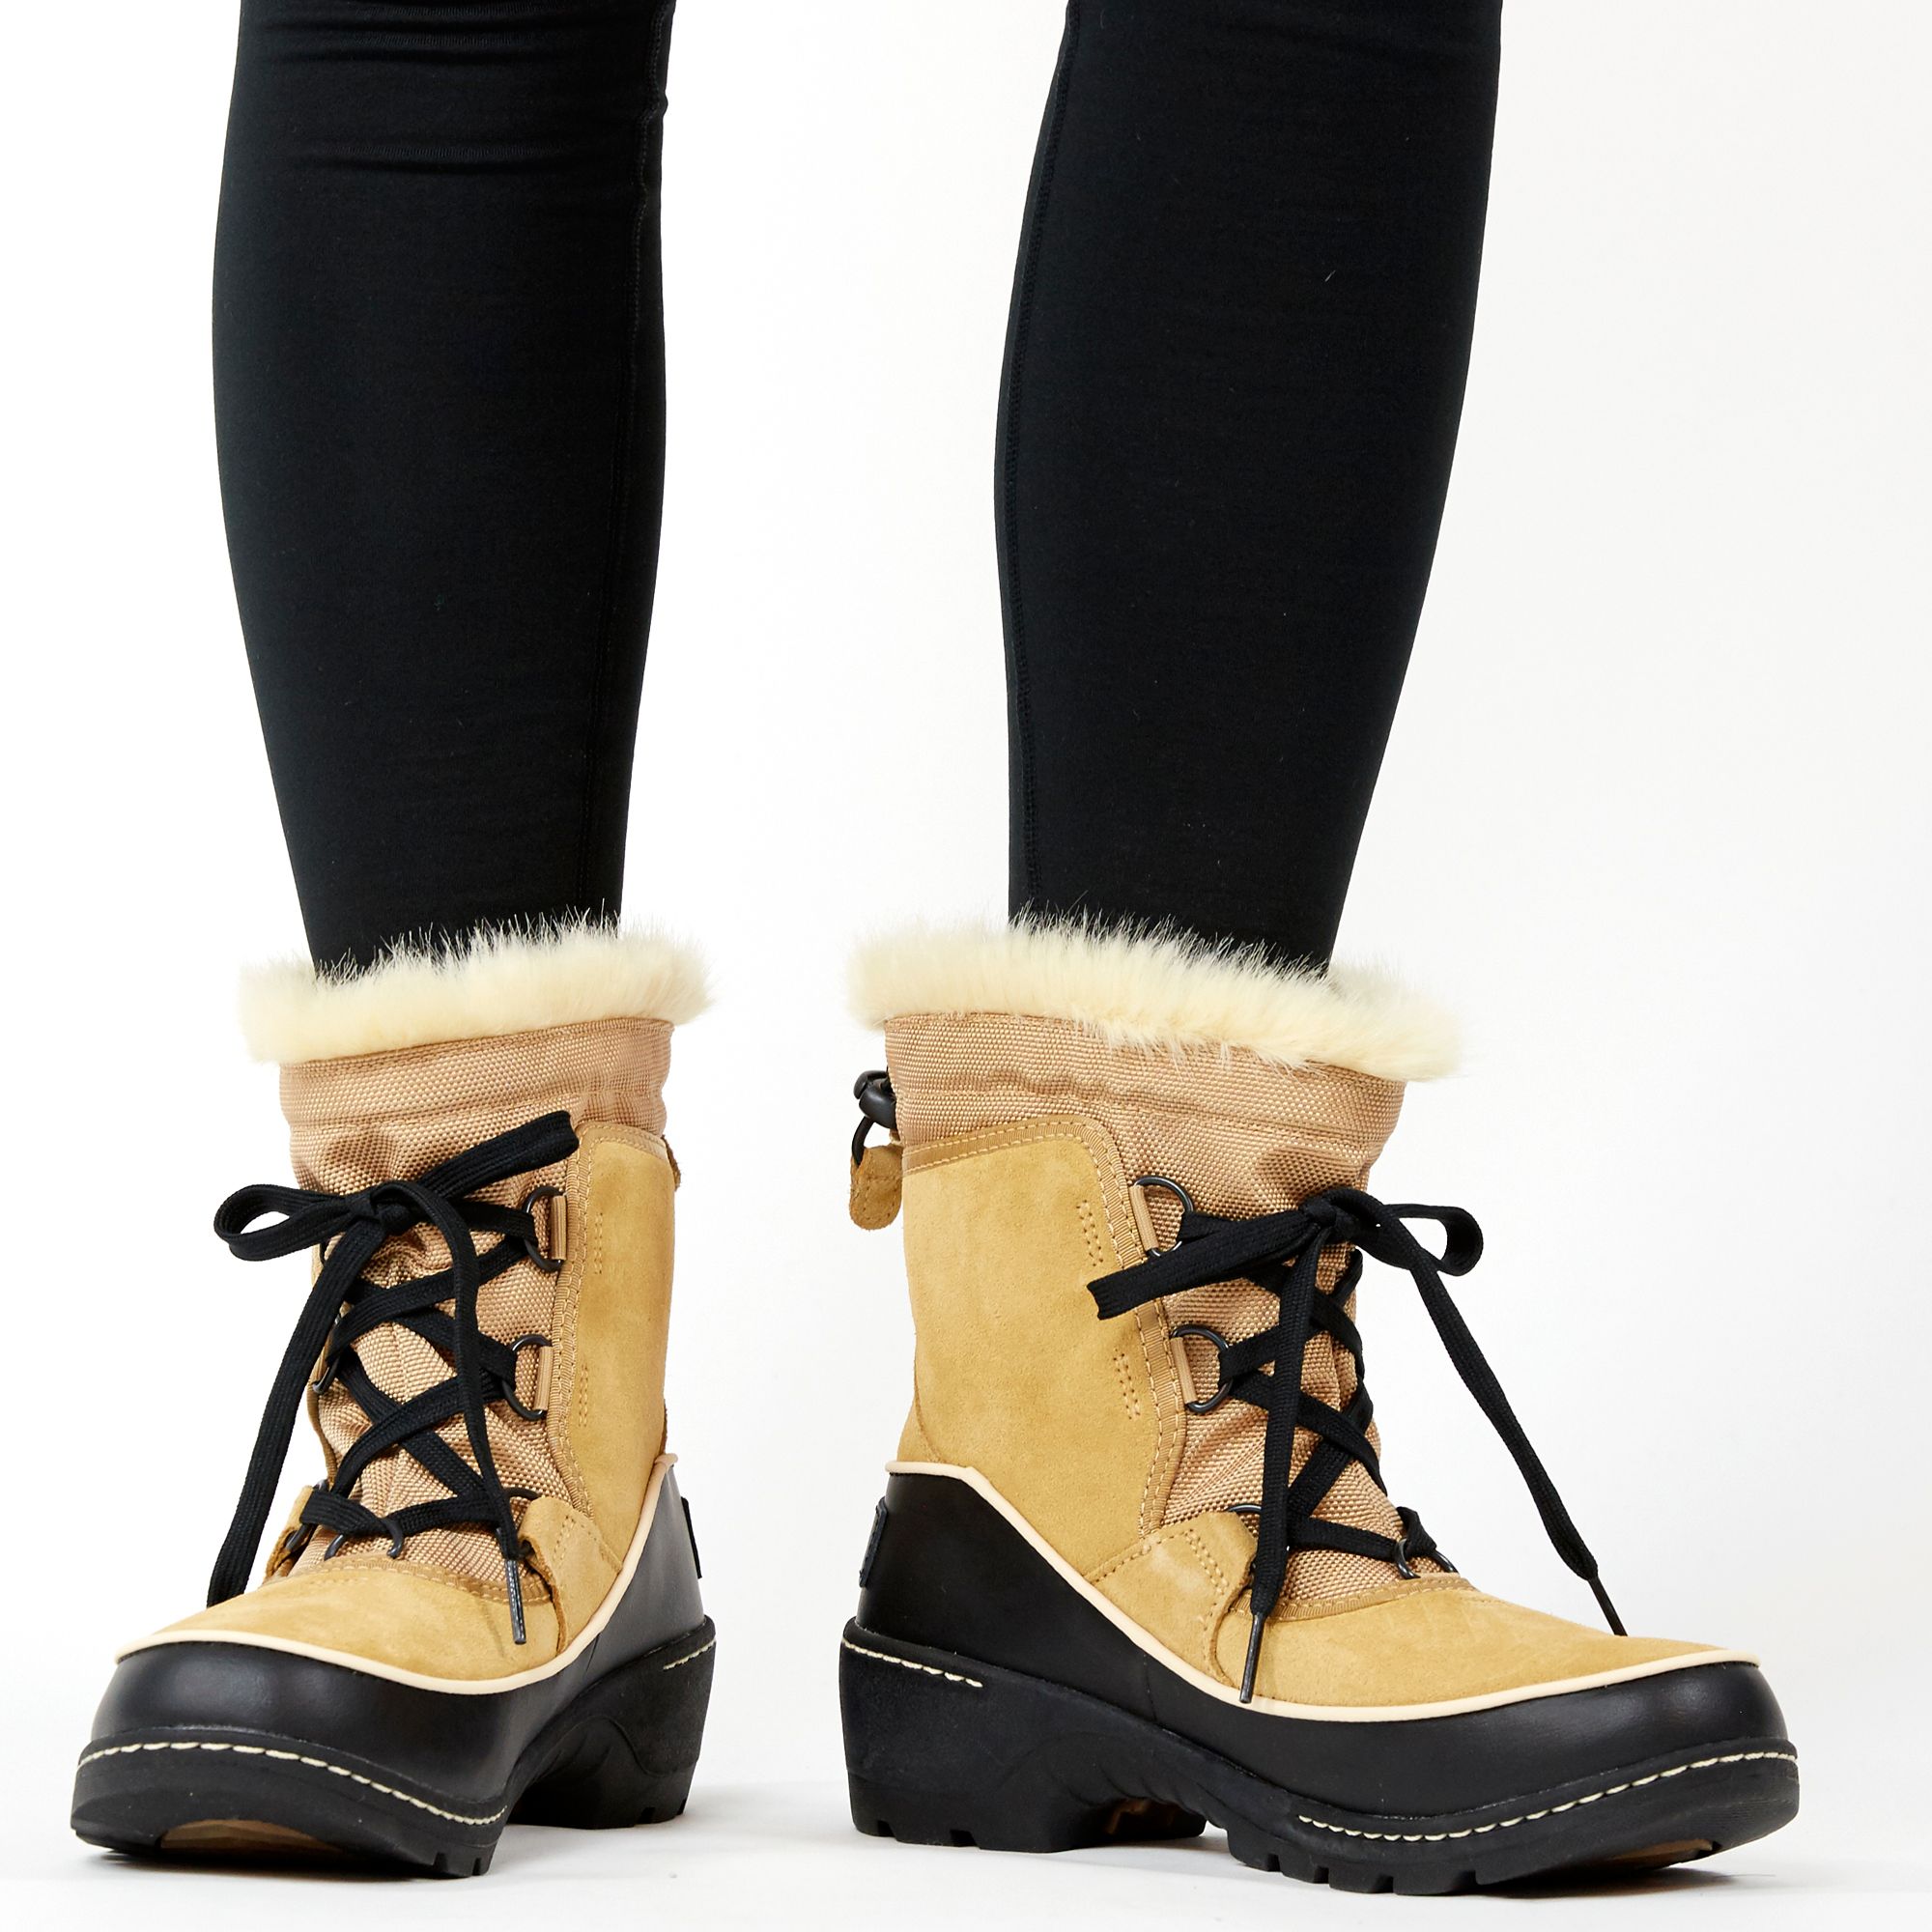 Tivoli III Waterproof Winter Boots 